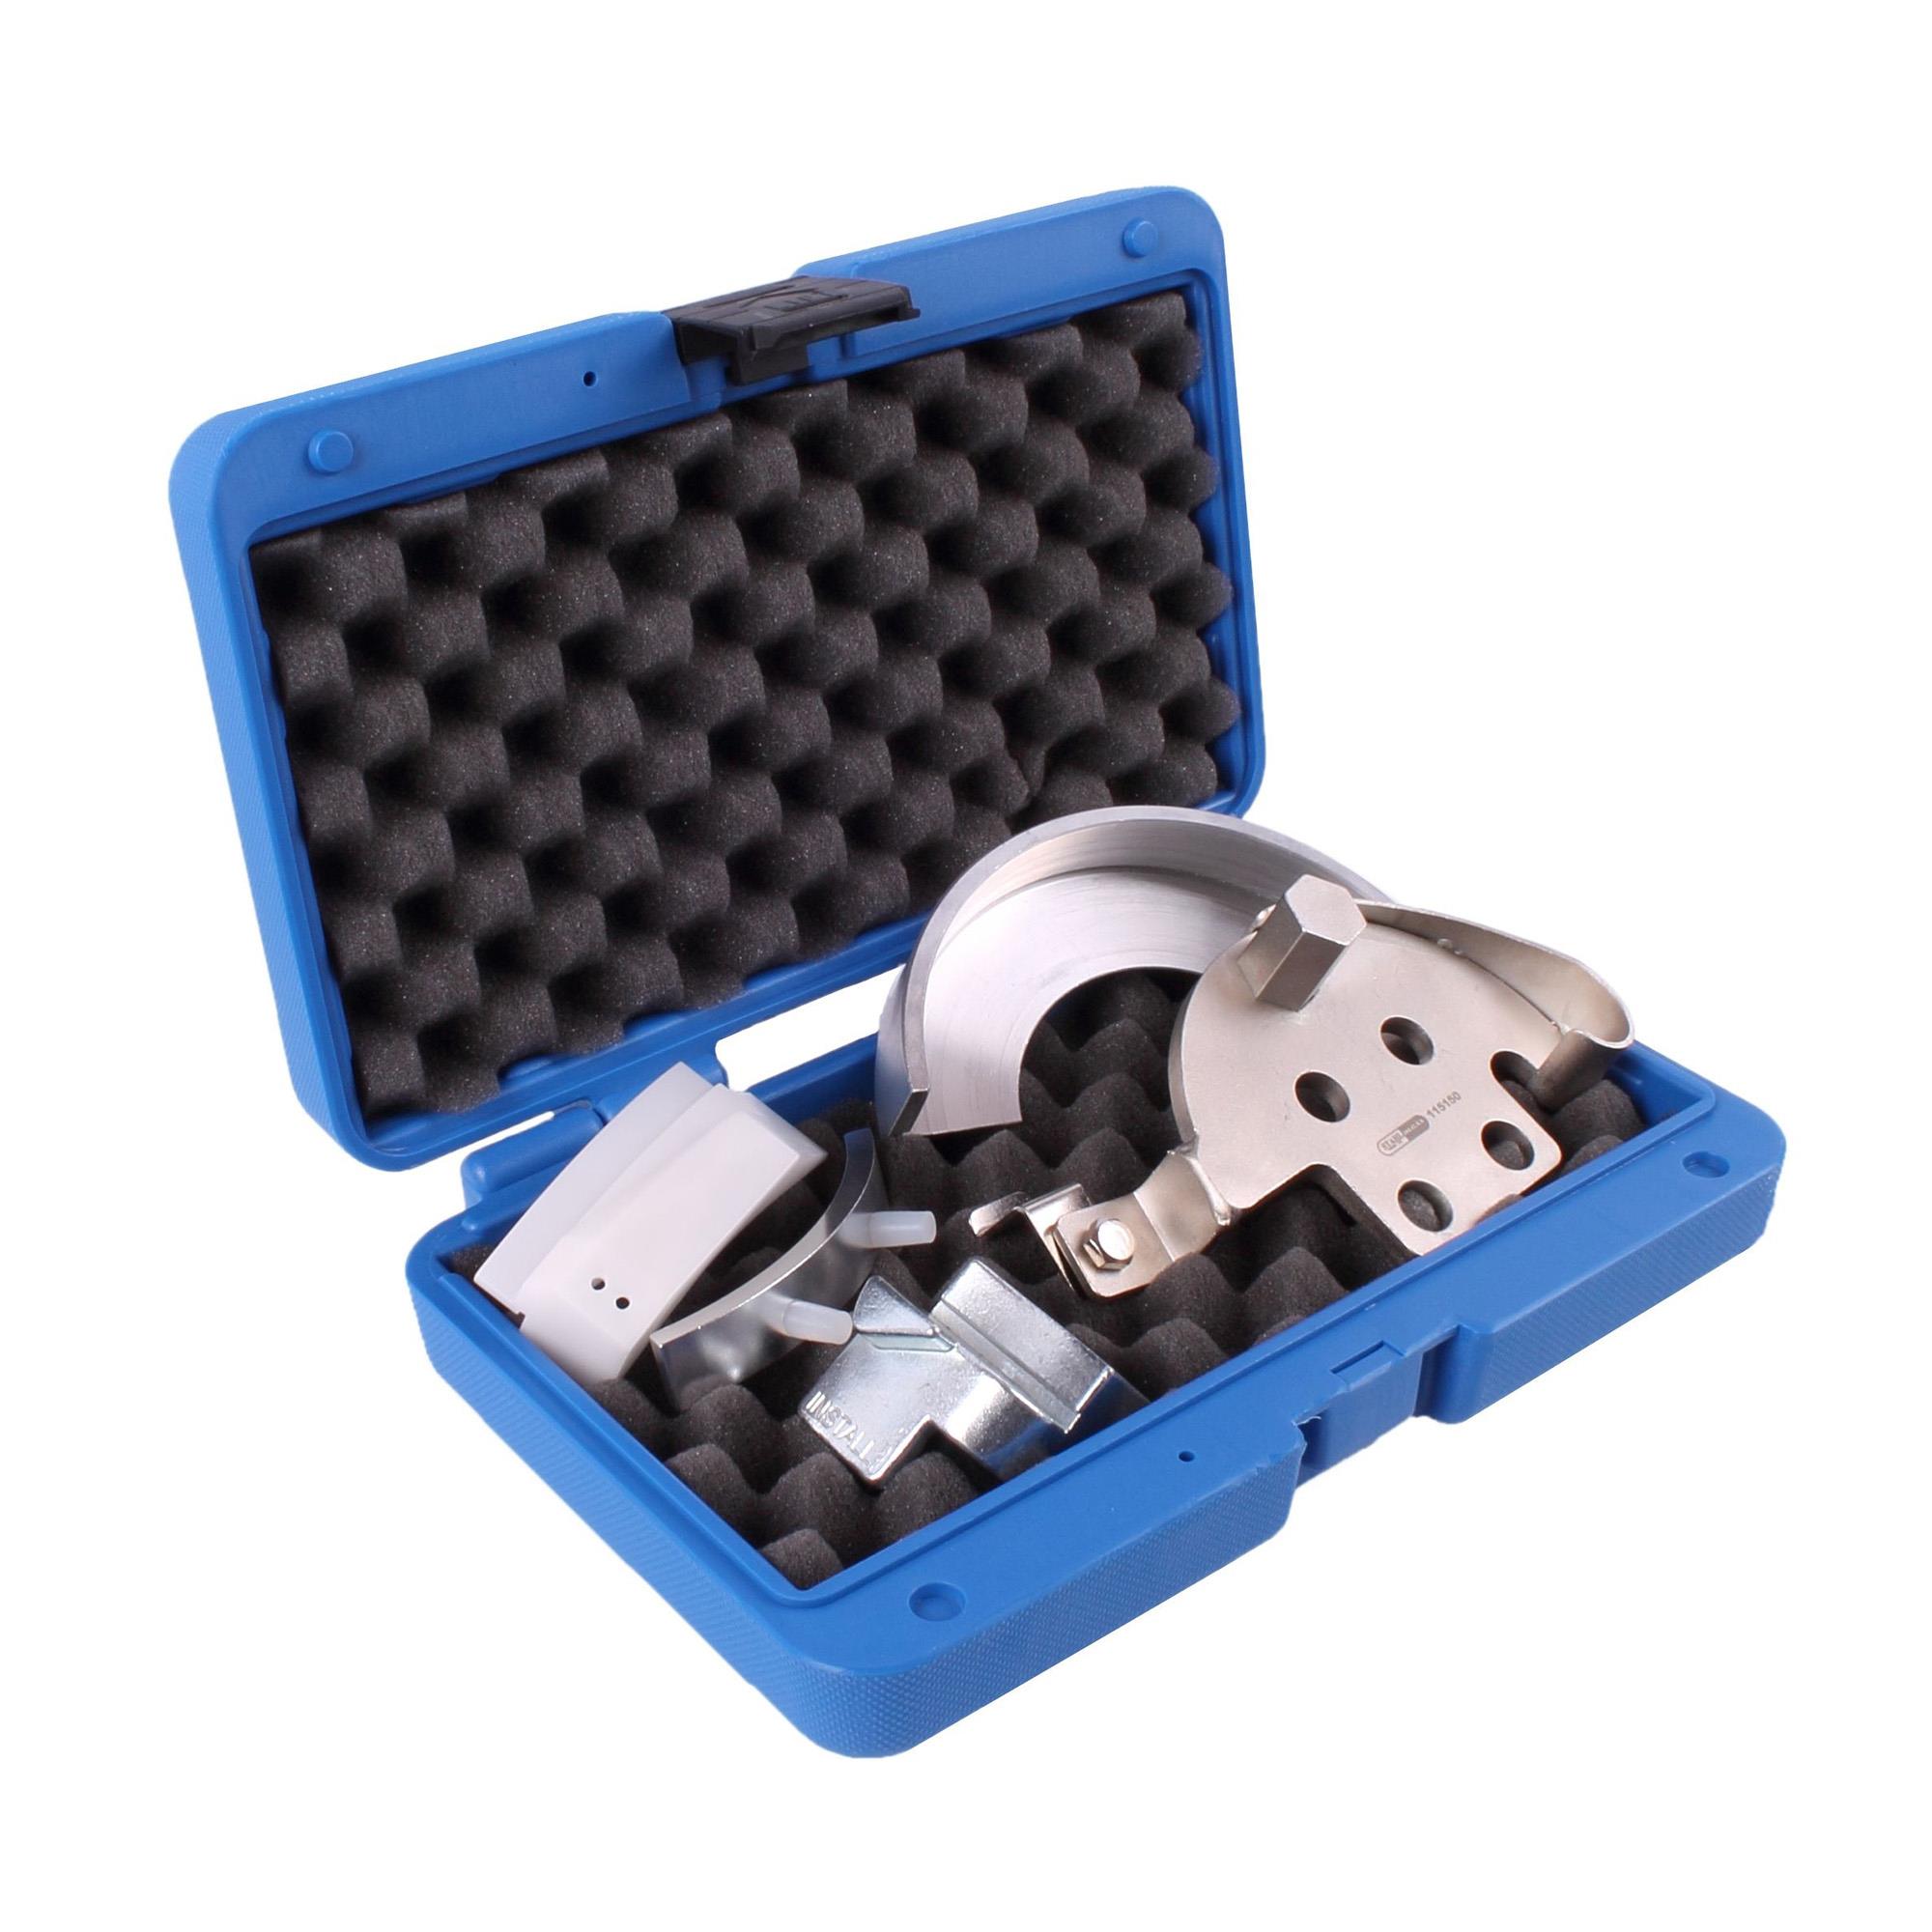 Keilriemen Montage-Werkzeug-Satz für flexible Keilrippenriemen -  Leihwerkzeug, Verleih-Werkzeuge, Spezialwerkzeug